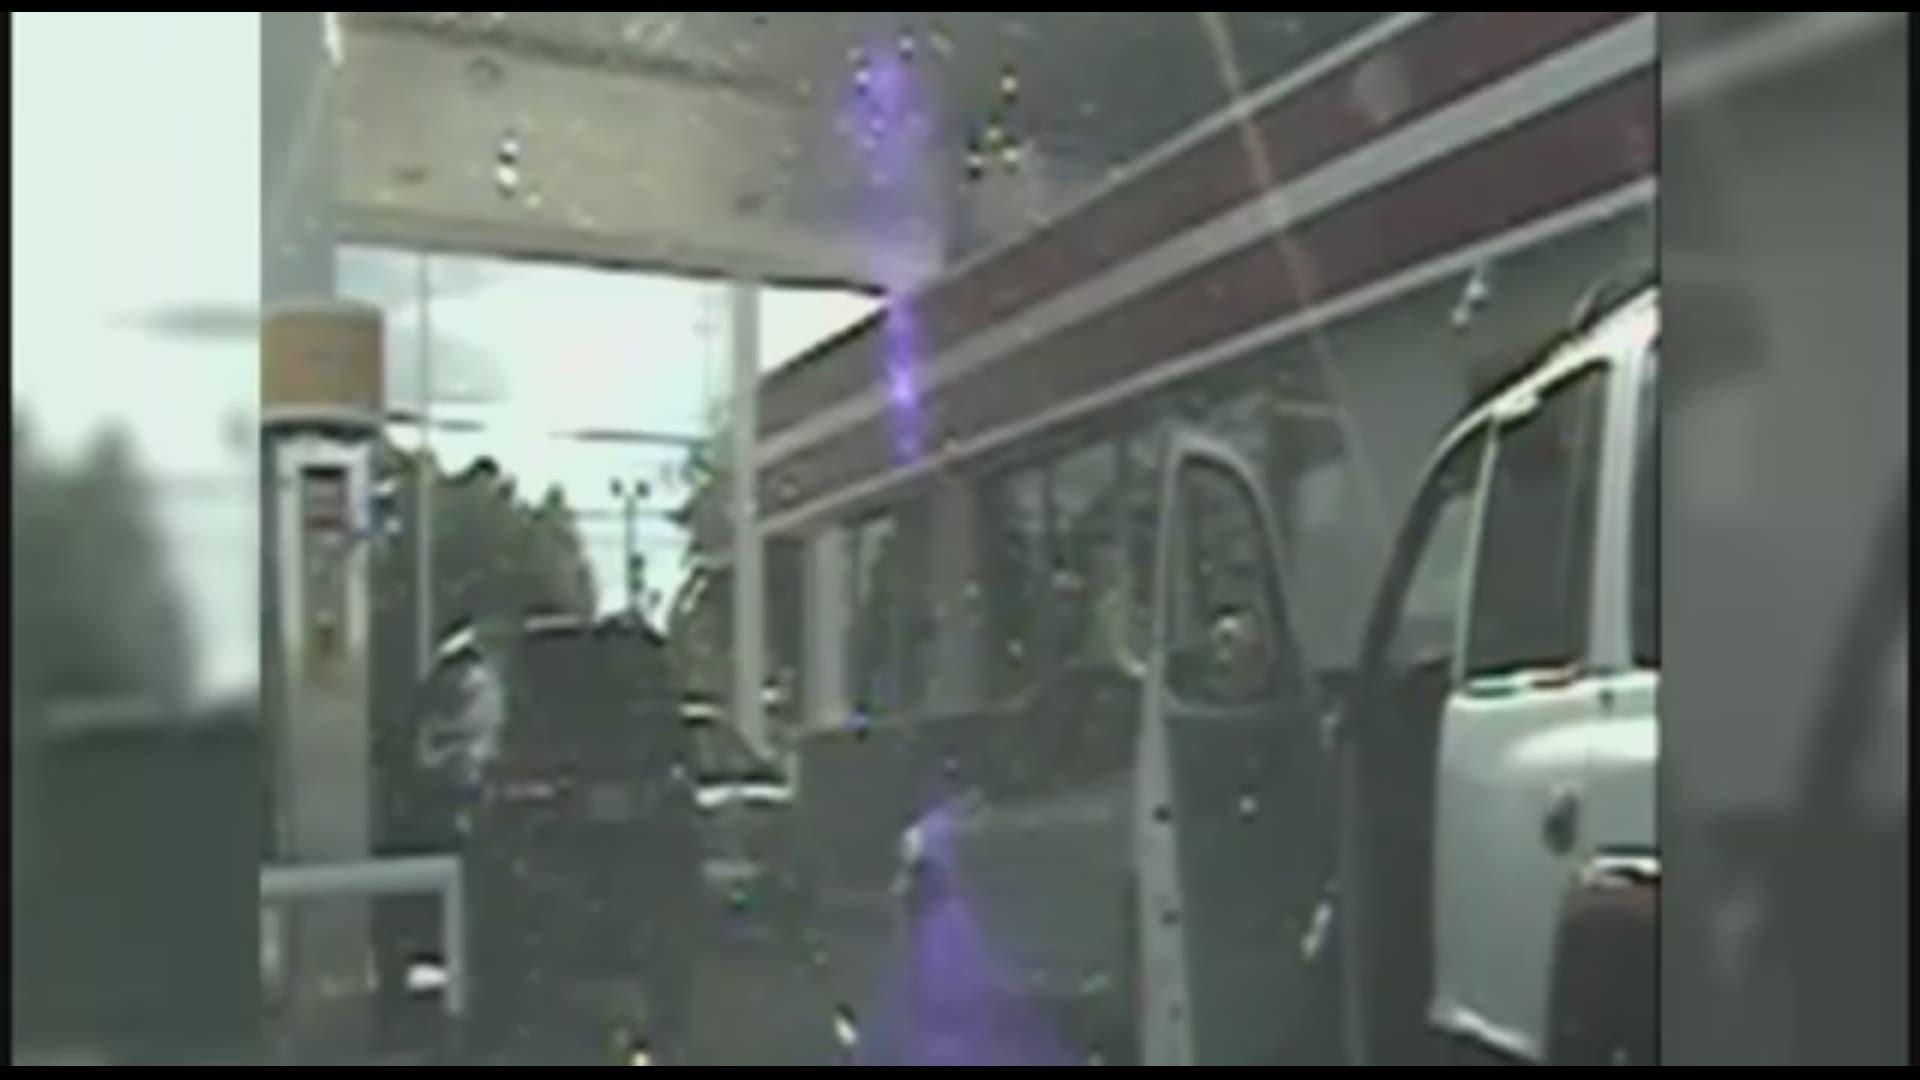 Video of the September 2014 incident where Sean Groubert shot Levar Jones.